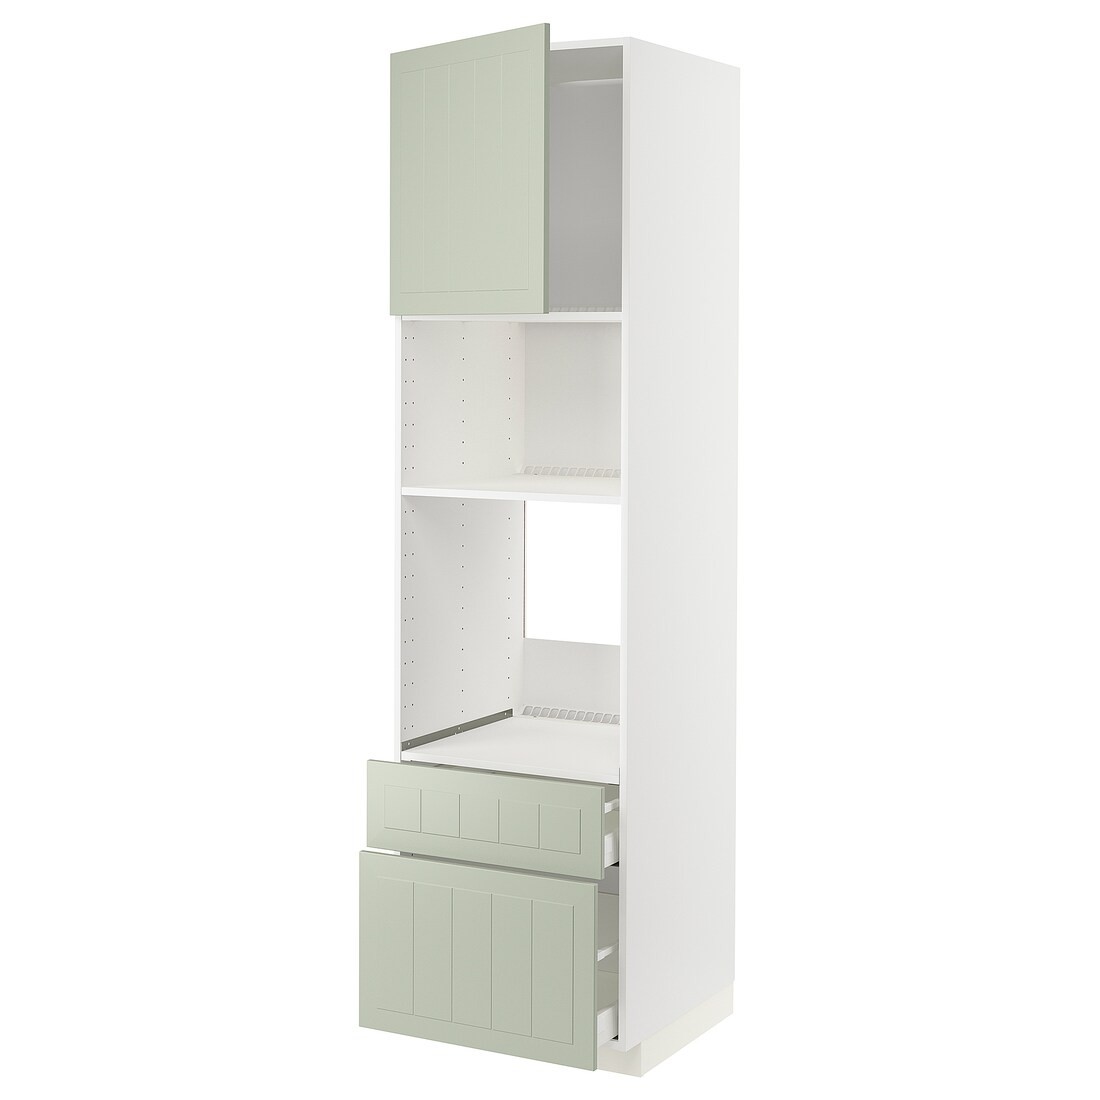 IKEA METOD МЕТОД / MAXIMERA МАКСИМЕРА Высокий шкаф для духовки / микроволновки с дверями / 2 ящиками, белый / Stensund светло-зеленый, 60x60x220 см 19487609 | 194.876.09